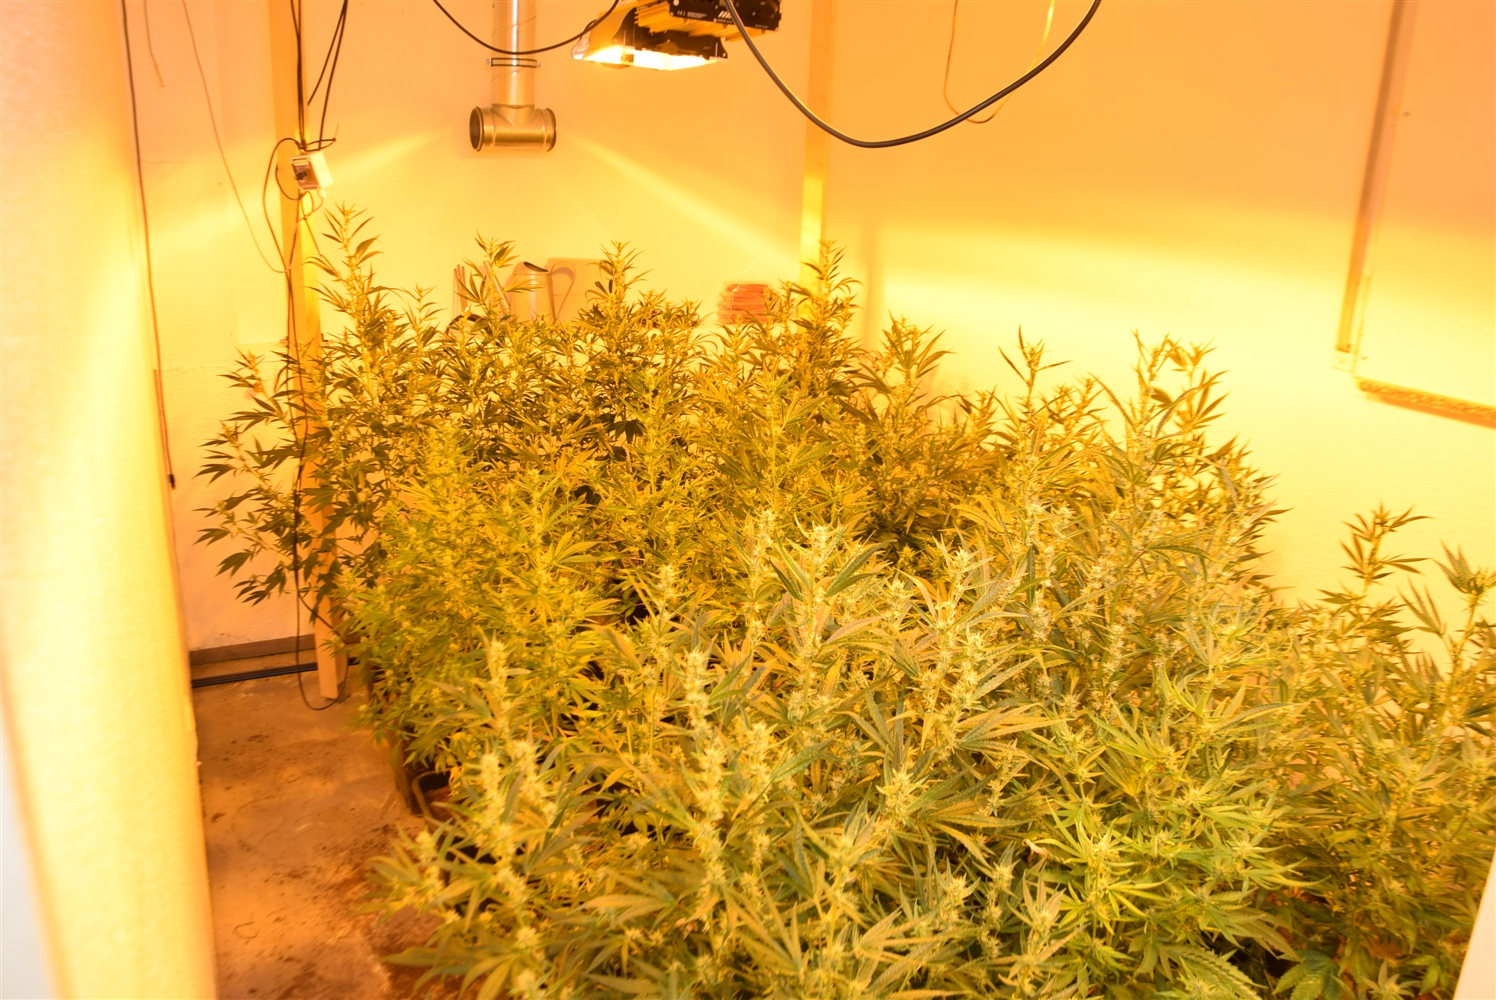 Erftstadt: Polizeibeamte stellten über 200 Cannabispflanzen sicher